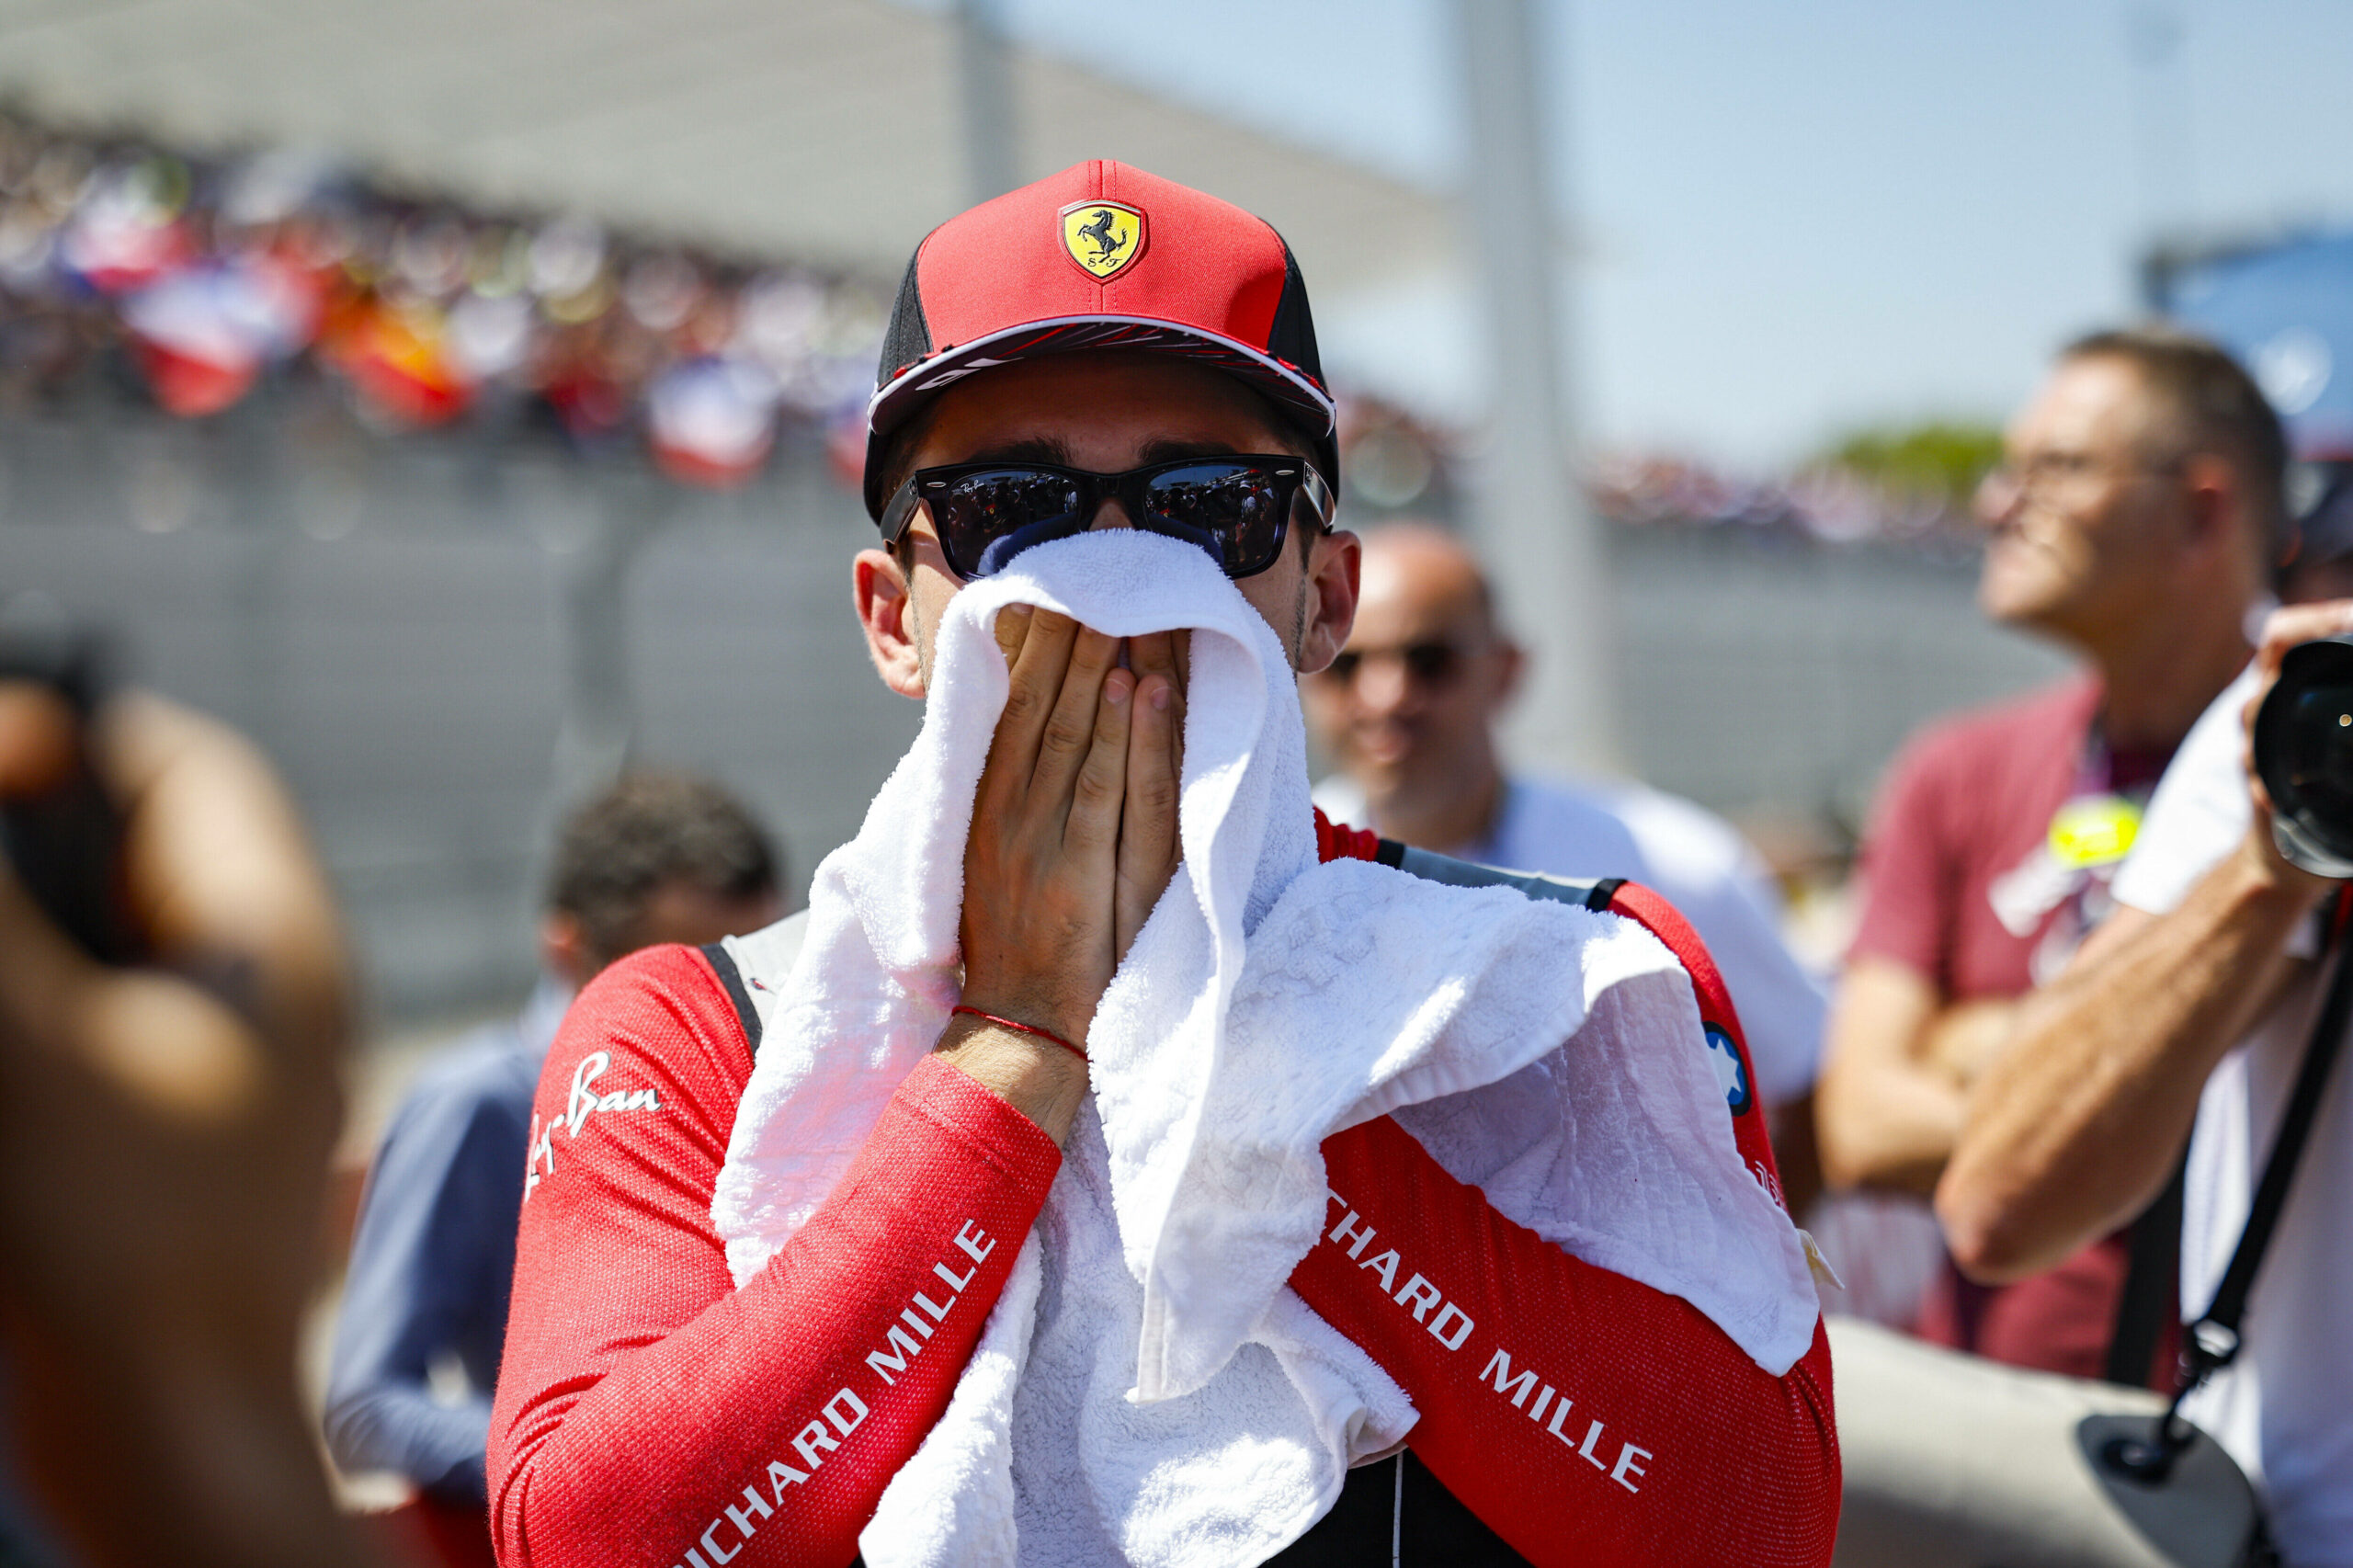 Ferrari-Pilot Charles Leclerc erlebte in Le Castellet einen gebrauchten Tag.